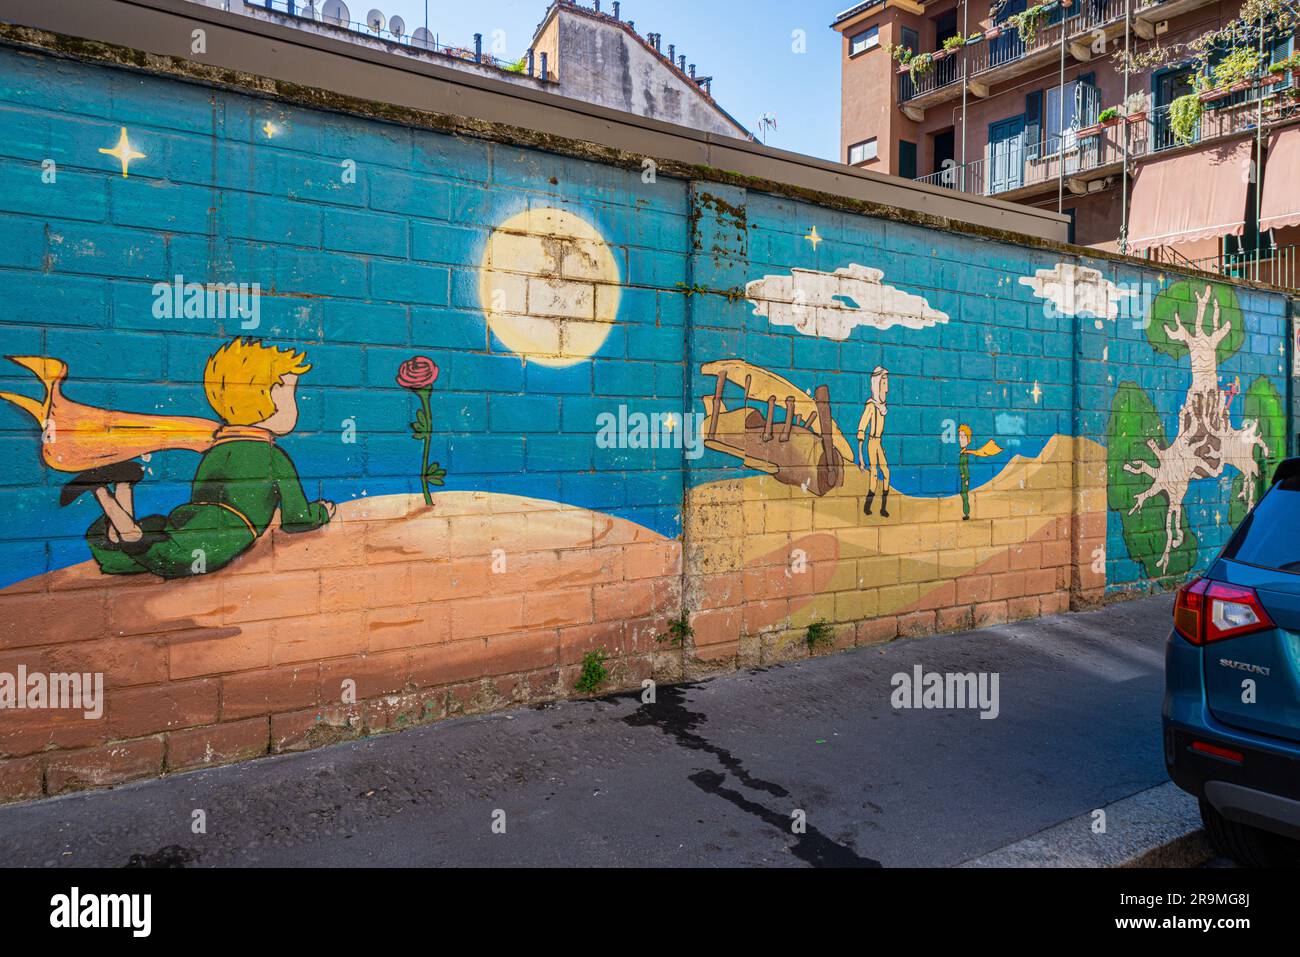 Wunderschönes Wandgemälde an einer Ziegelwand in Mailand, Italien. Basierend auf einem Kinderbuch. Stockfoto